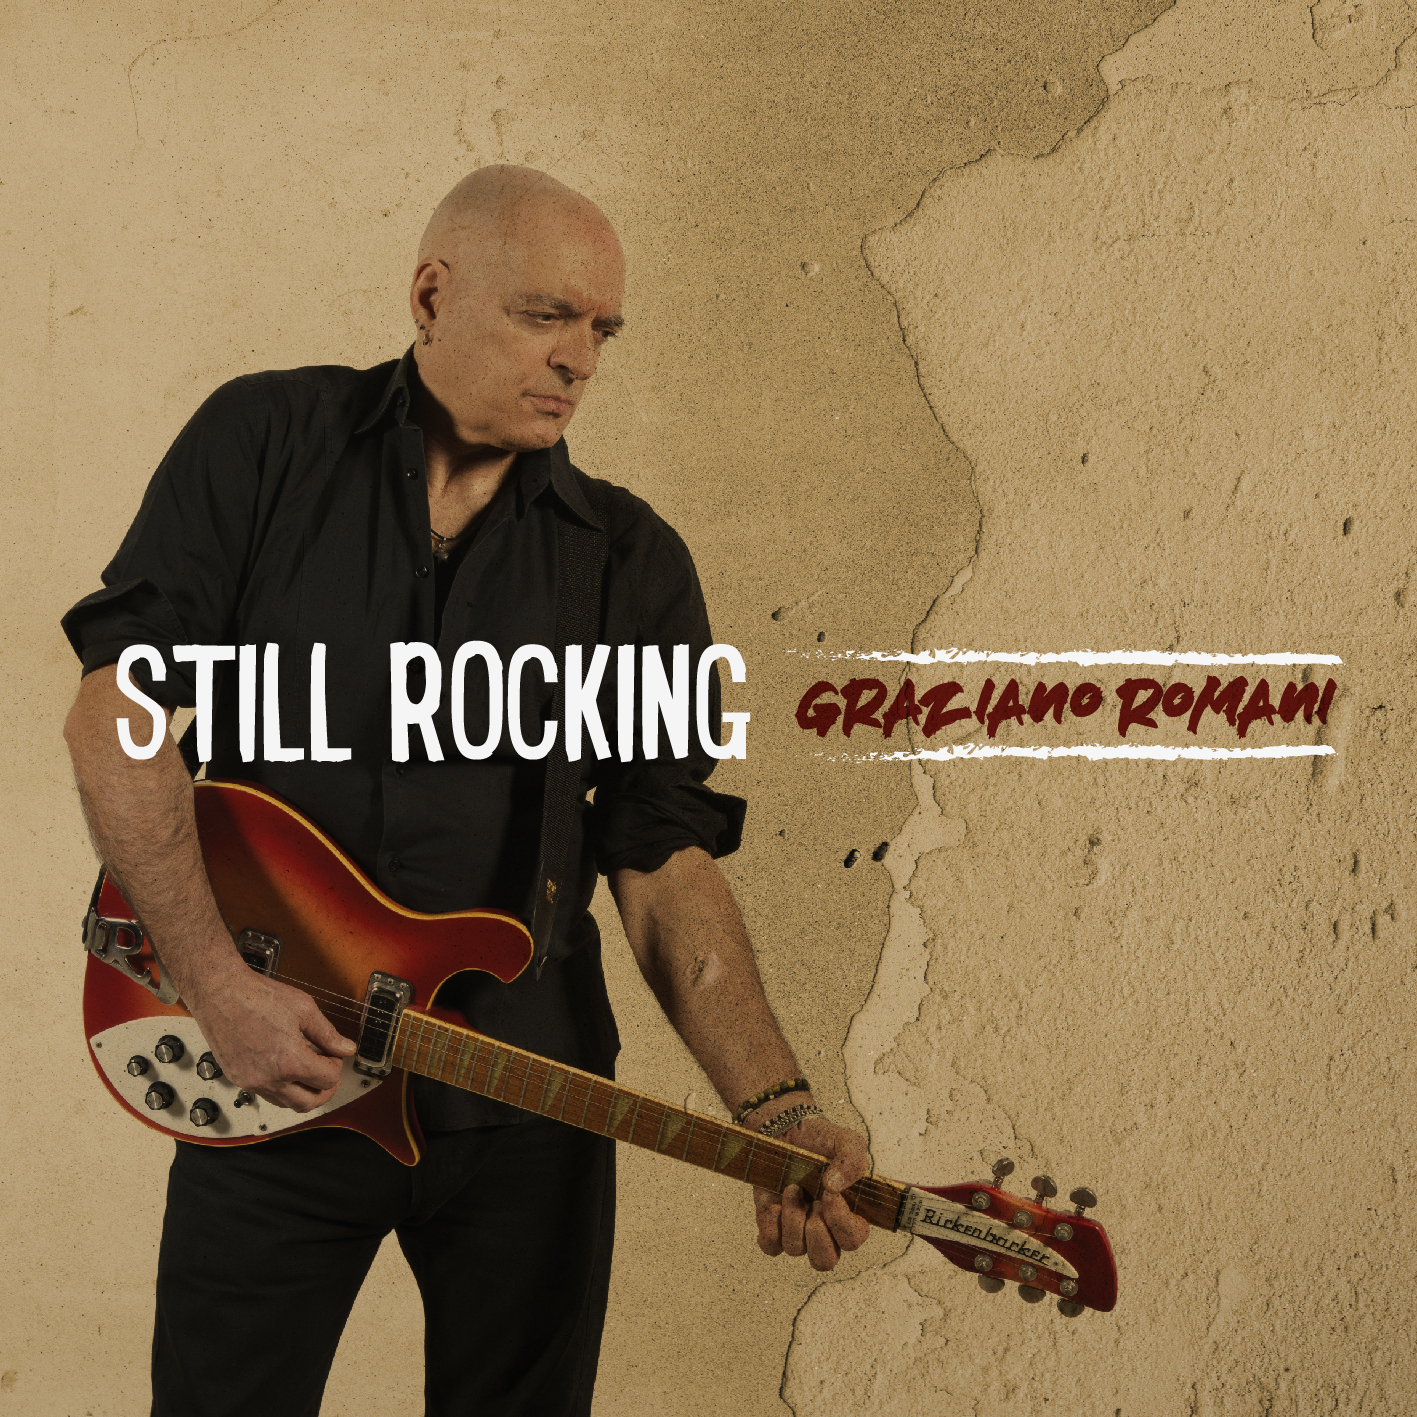 Graziano Romani - Still rocking